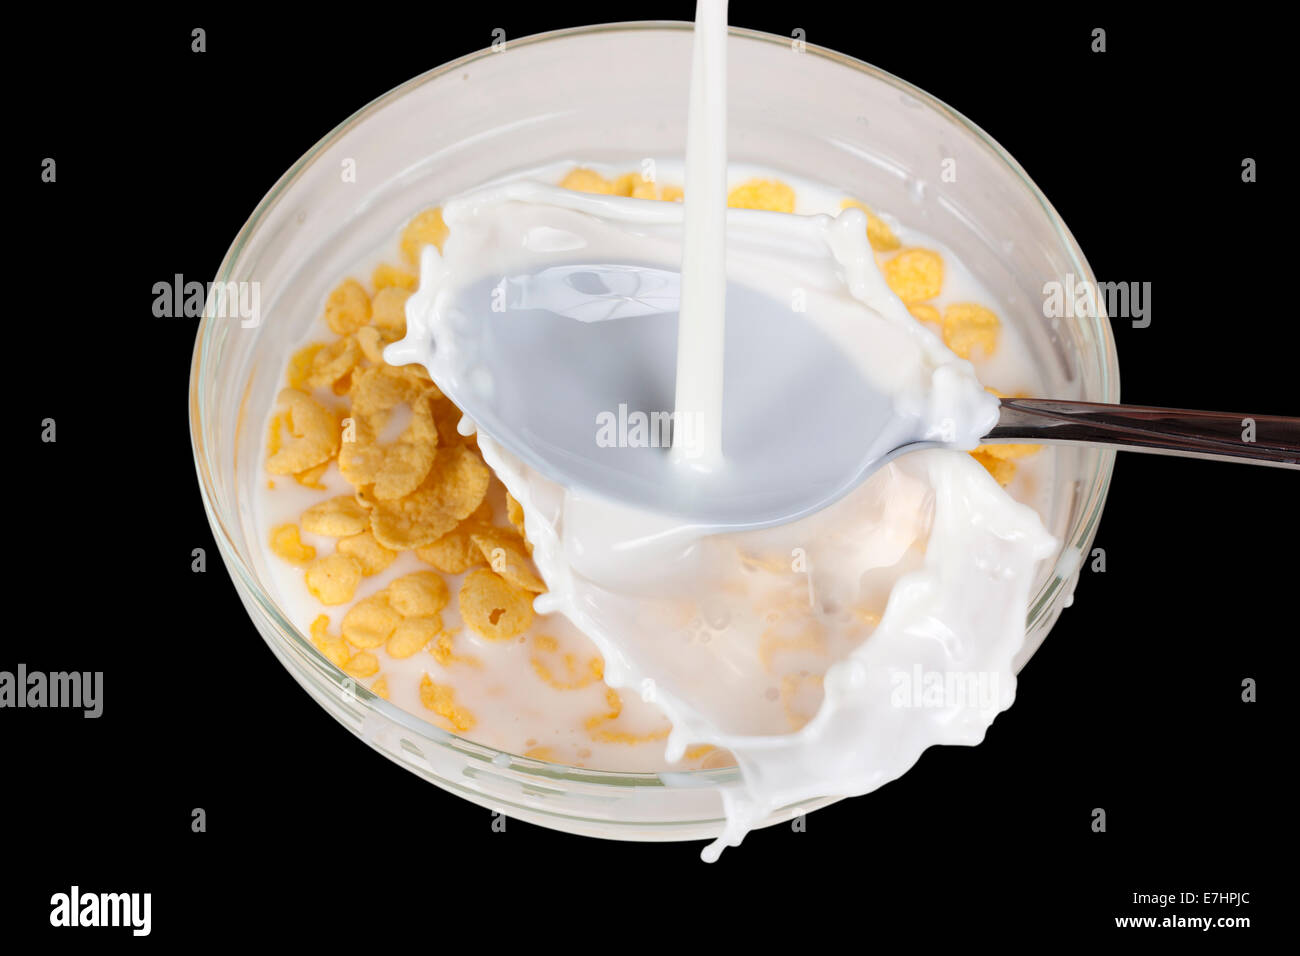 Cereali in ciotola e splash latte isolate su sfondo nero con tracciato di ritaglio Foto Stock